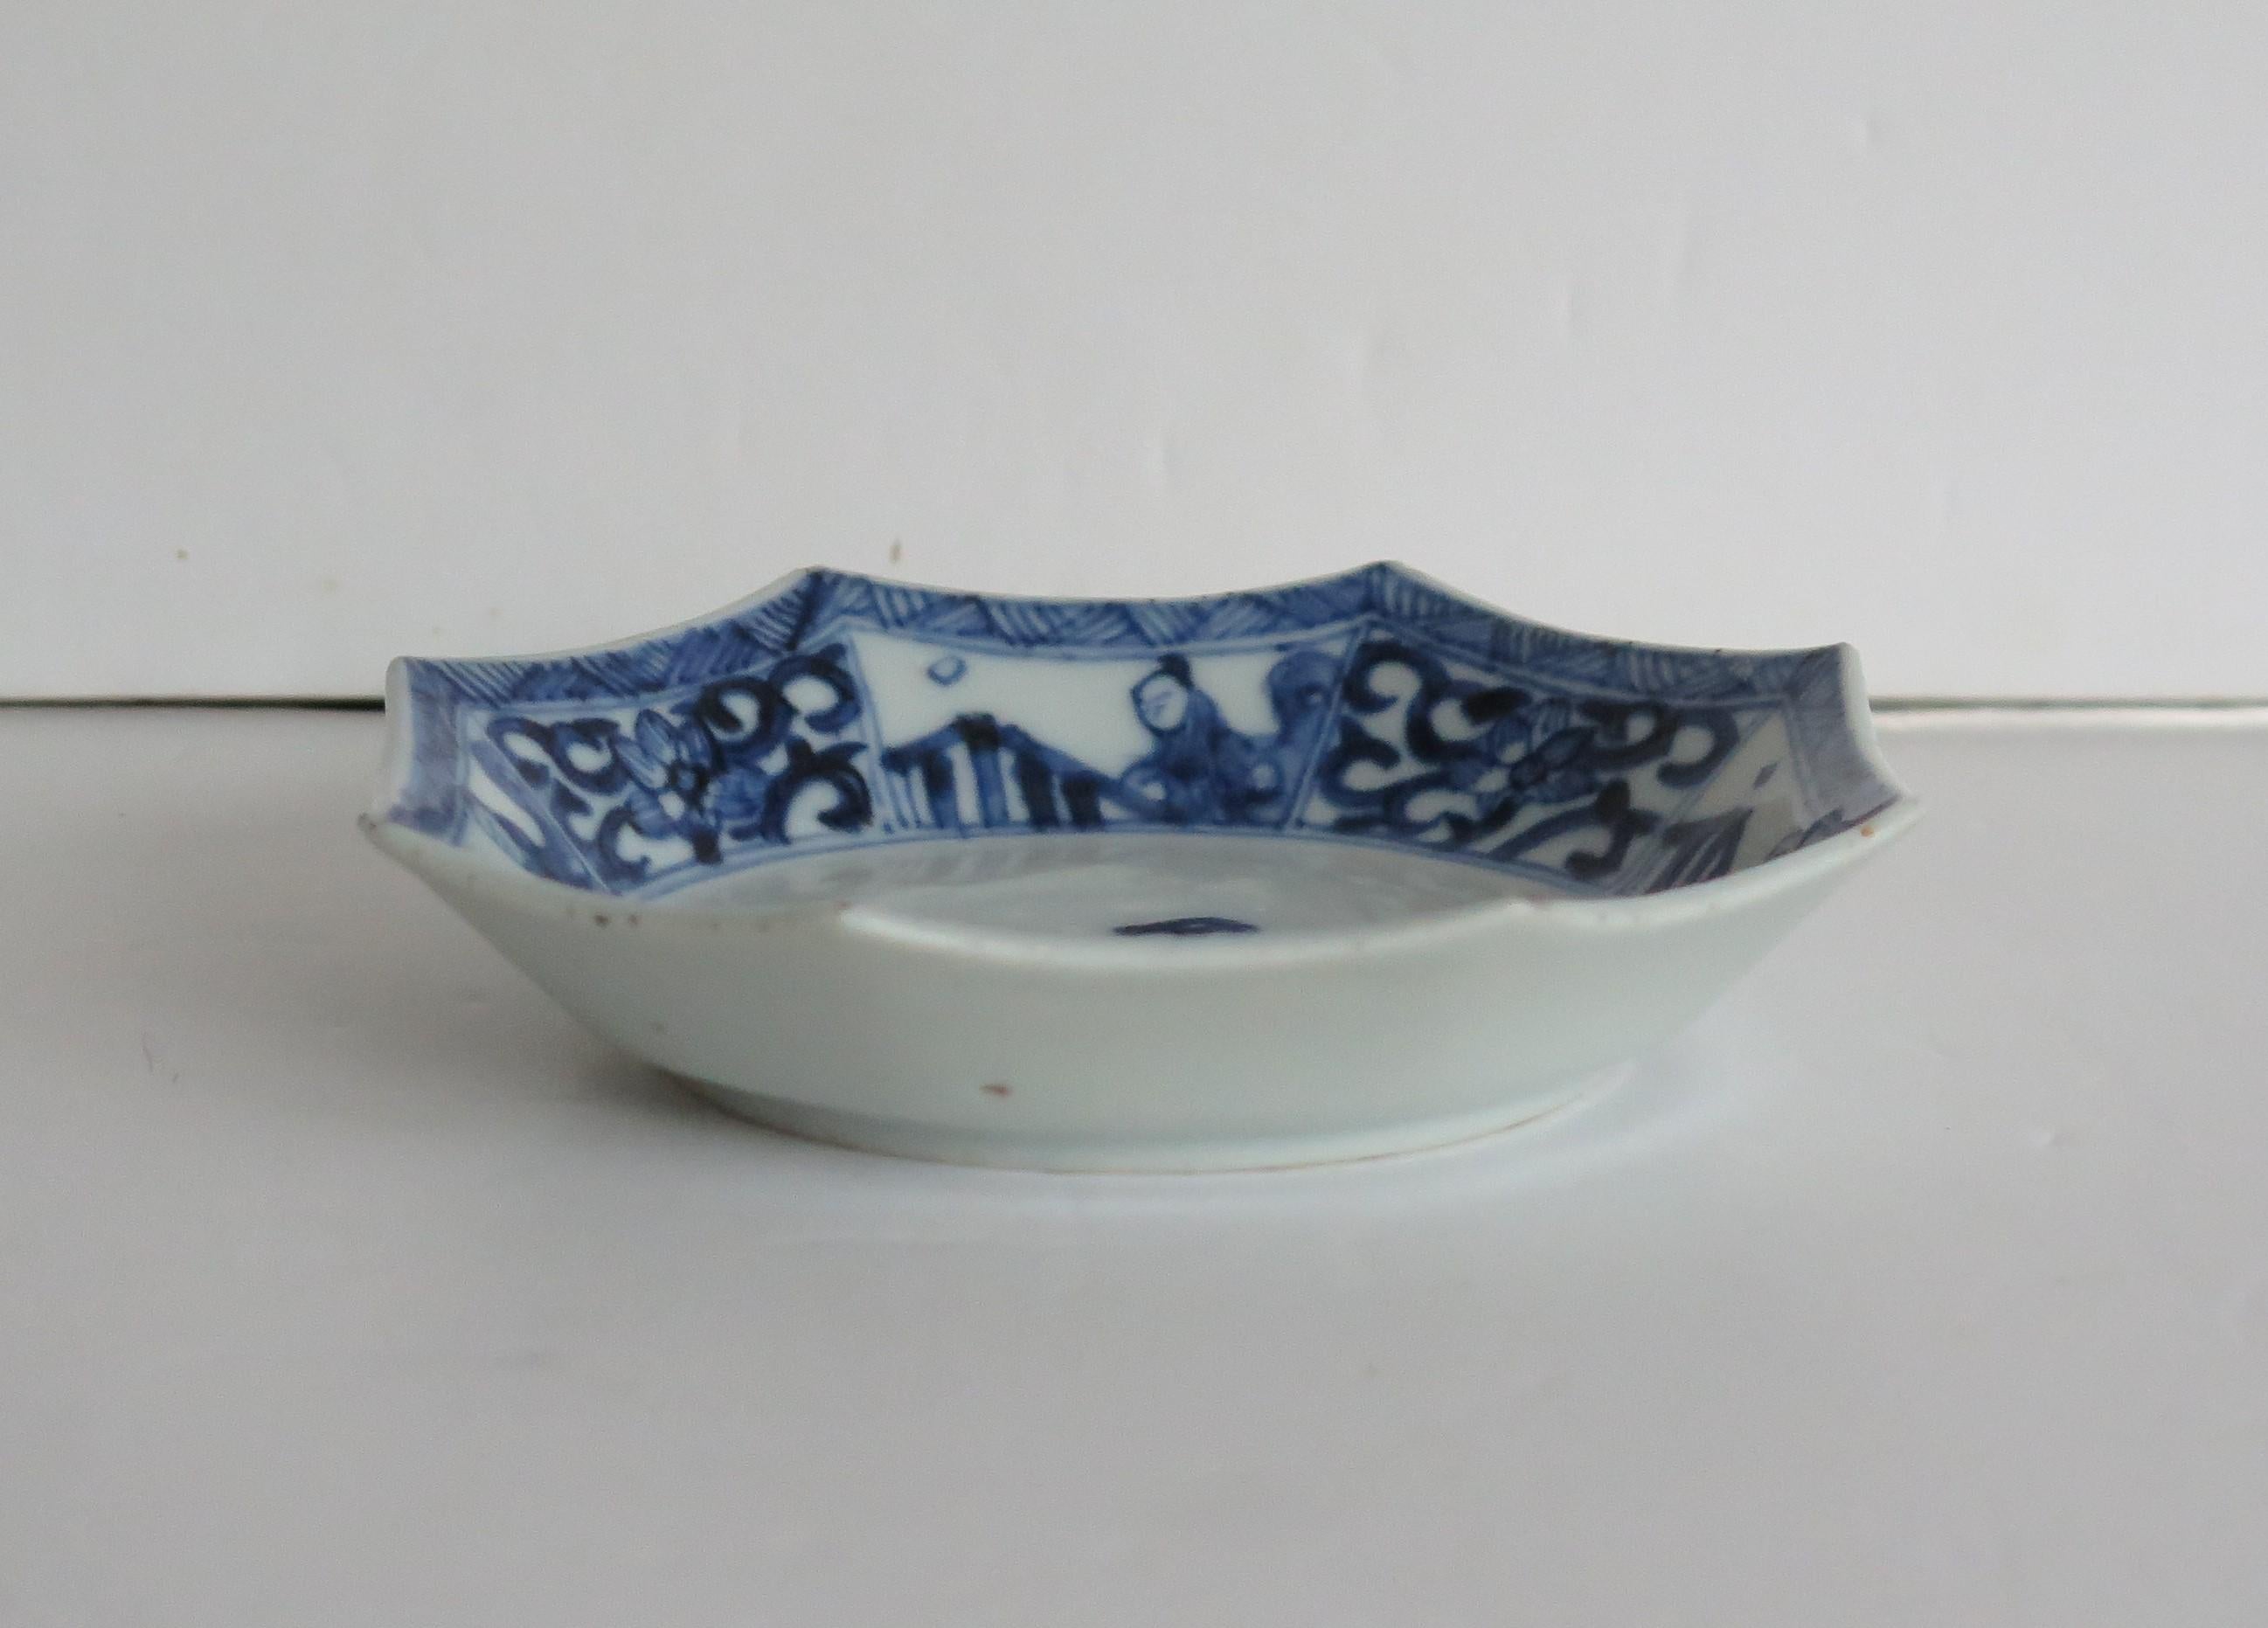 Dies ist eine wunderschön handbemalte chinesische Porzellanschale in Blau und Weiß aus der Qing, Kangxi Periode, 1662-1722.

Die Schale ist fein getöpfert und hat eine achteckige Form. Sie besteht aus klarem, weißem Porzellan, einem sorgfältig